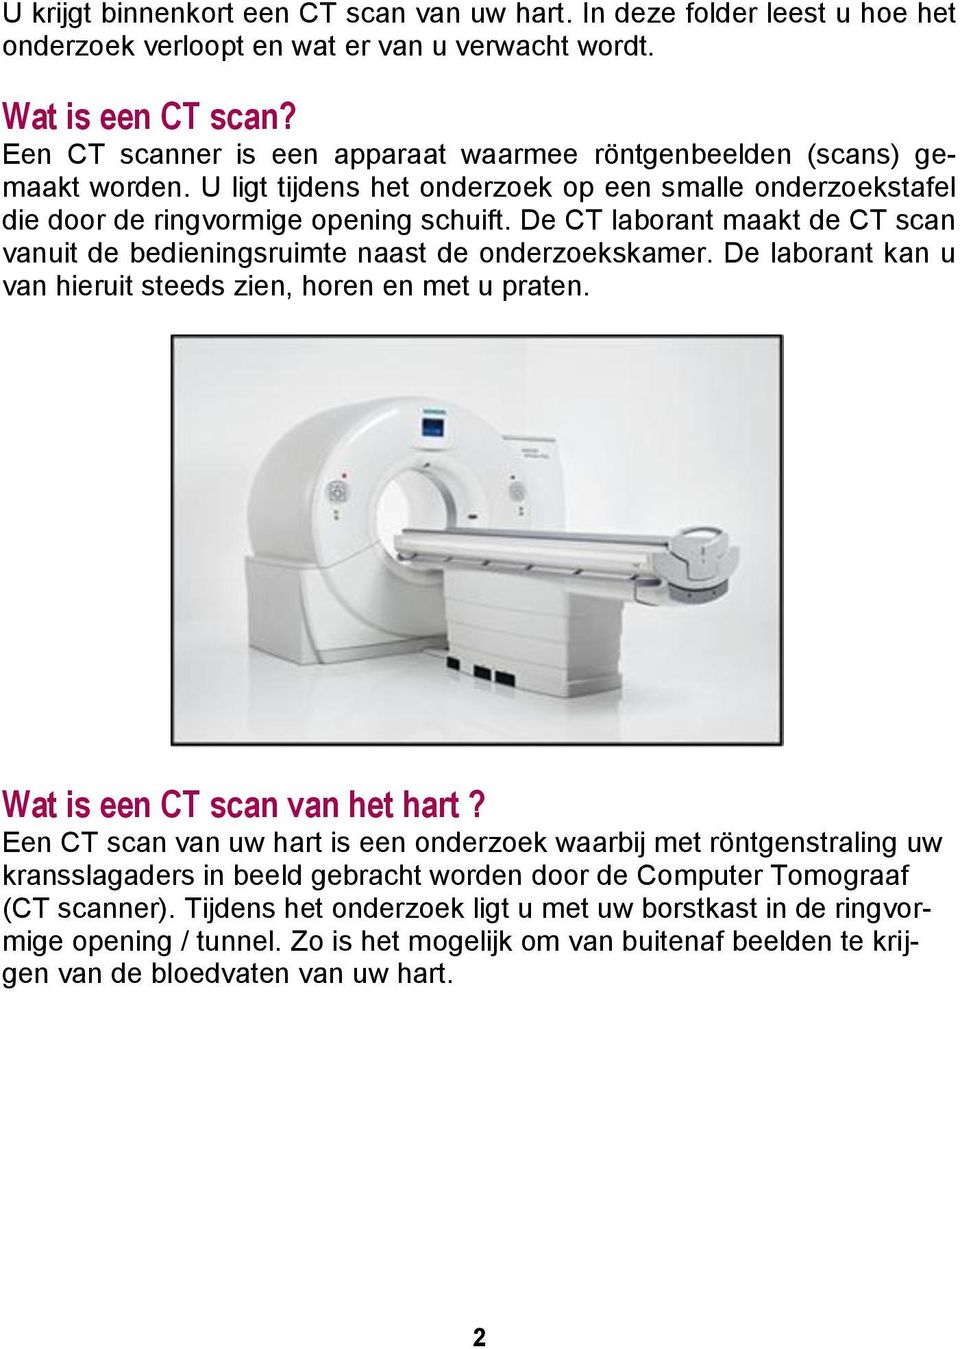 De CT laborant maakt de CT scan vanuit de bedieningsruimte naast de onderzoekskamer. De laborant kan u van hieruit steeds zien, horen en met u praten. Wat is een CT scan van het hart?